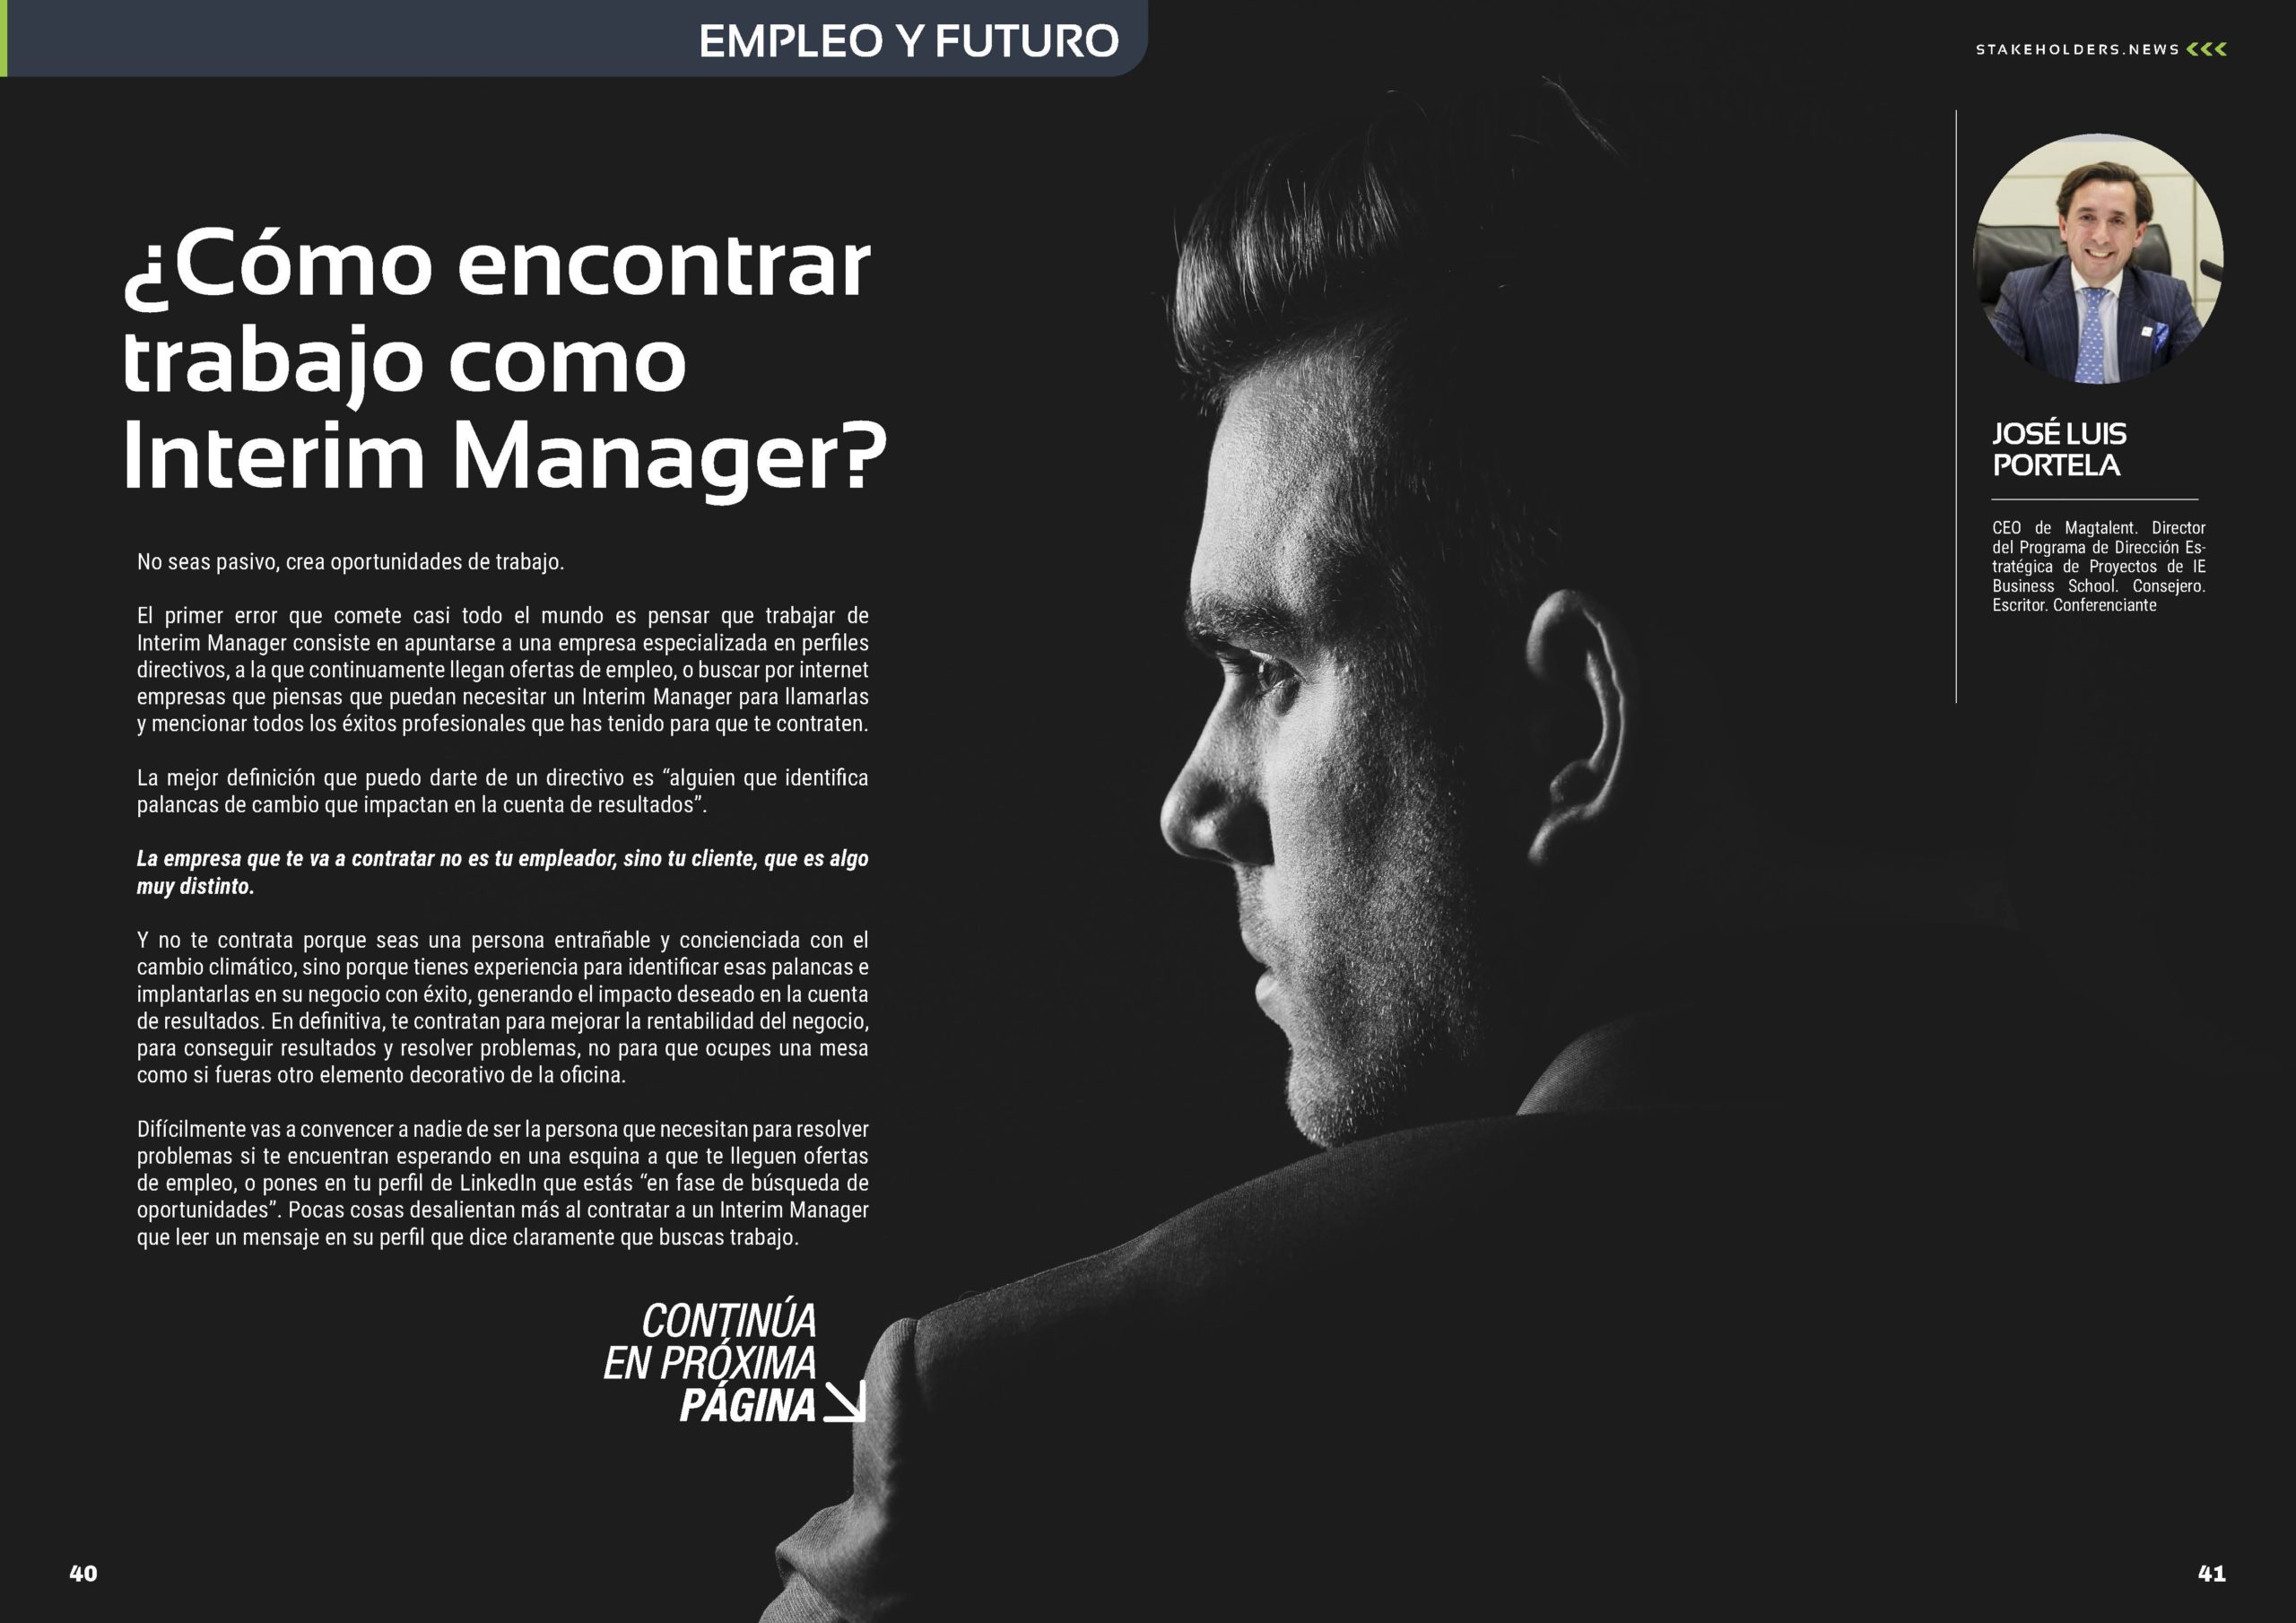 Artículo "¿Cómo encontrar trabajo como Interim Manager?" de Jose Luis Portela en la Sección " Empleo y Futuro" de la Revista Stakeholders.news